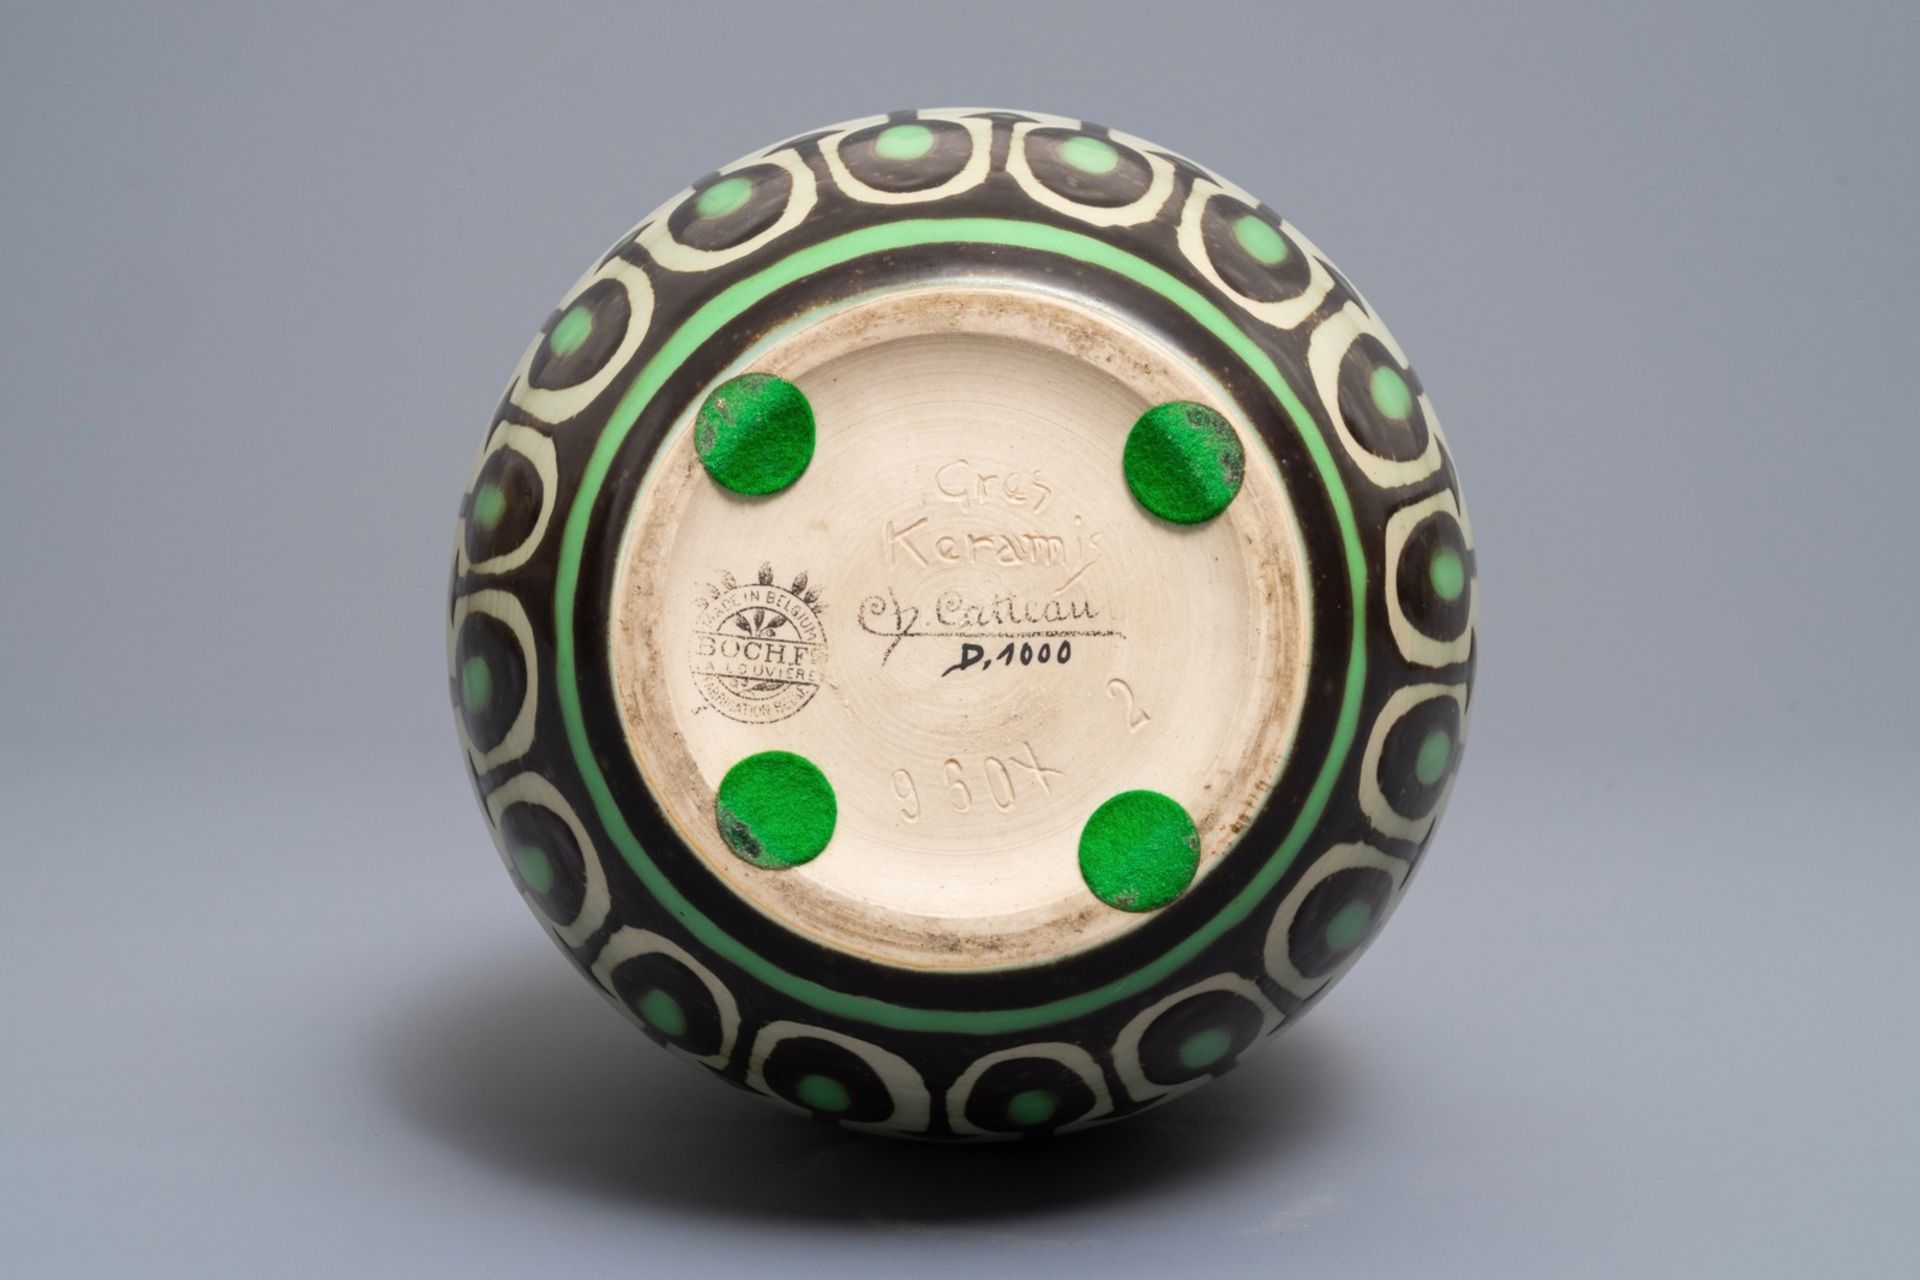 A matte glazed art deco vase, Charles Catteau for Boch KŽramis, 1st half 20th C. - Image 5 of 6